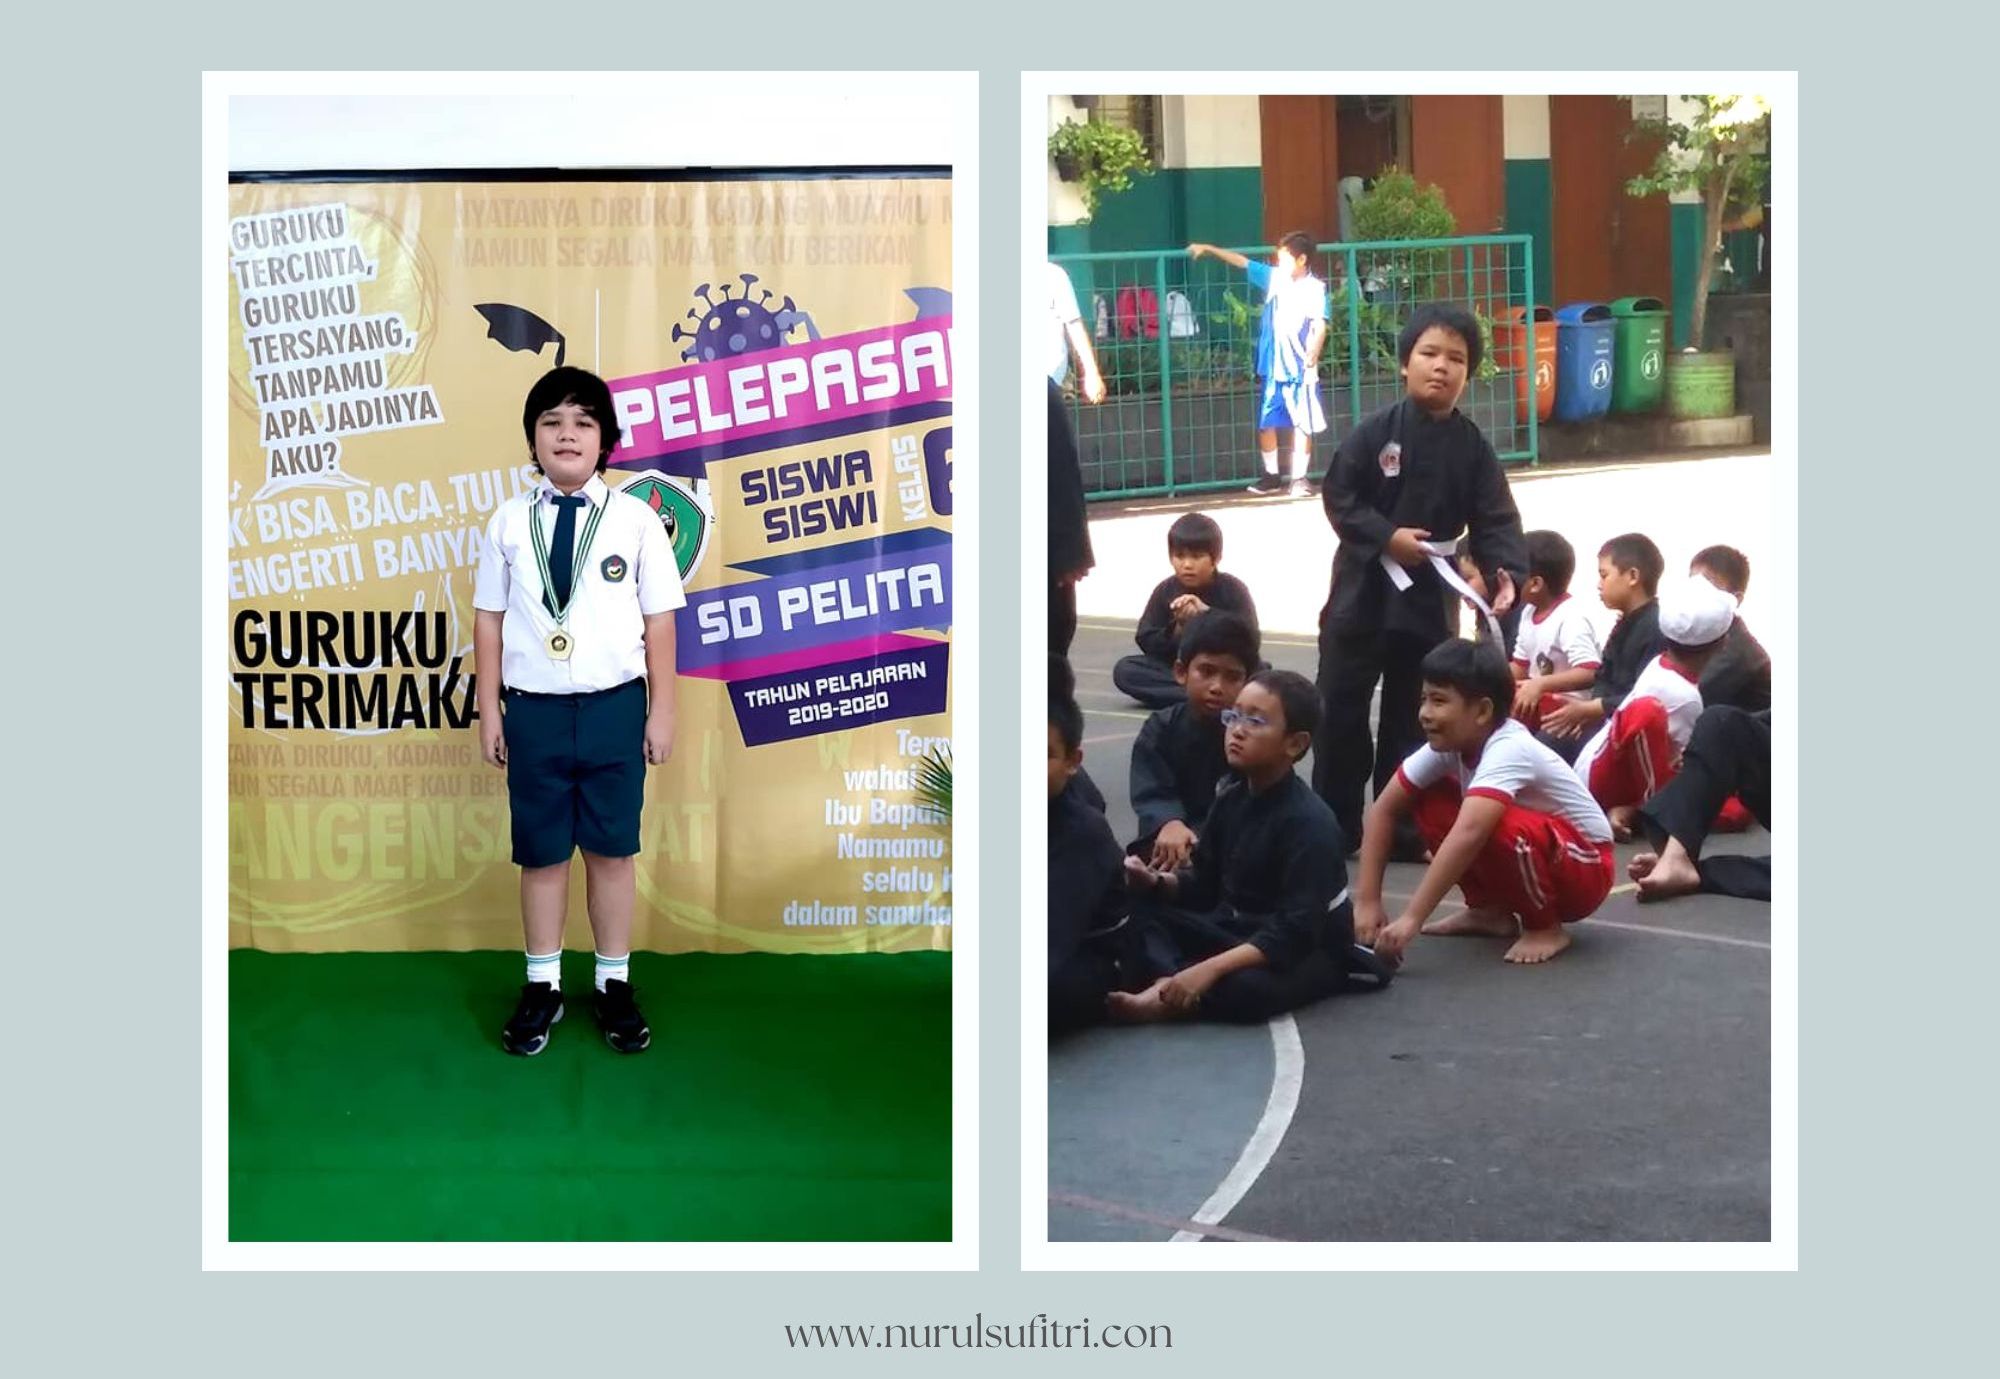 Biskuat Academy Indonesia Tingkatkan Inner Strength Anak di Bidang Olahraga Sepak Bola